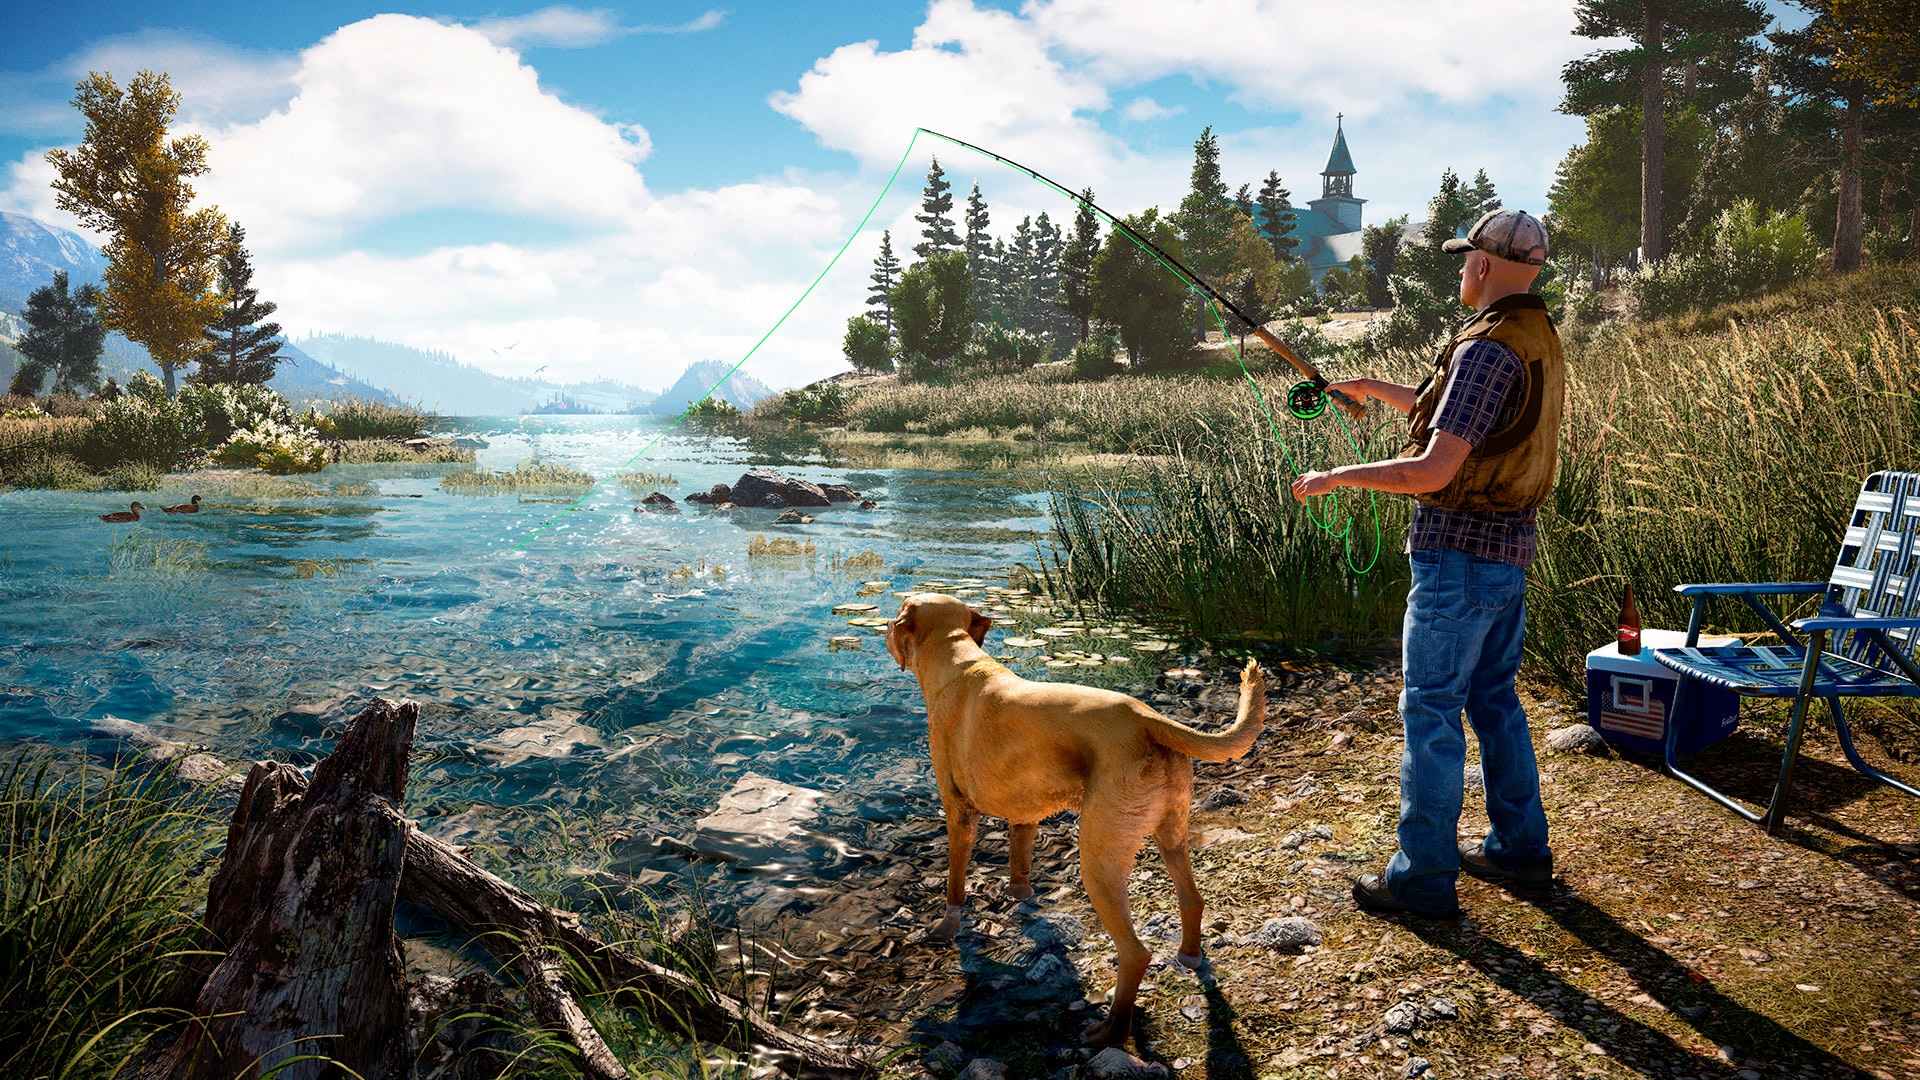 Journée ensoleillée où un homme pêche avec son chien